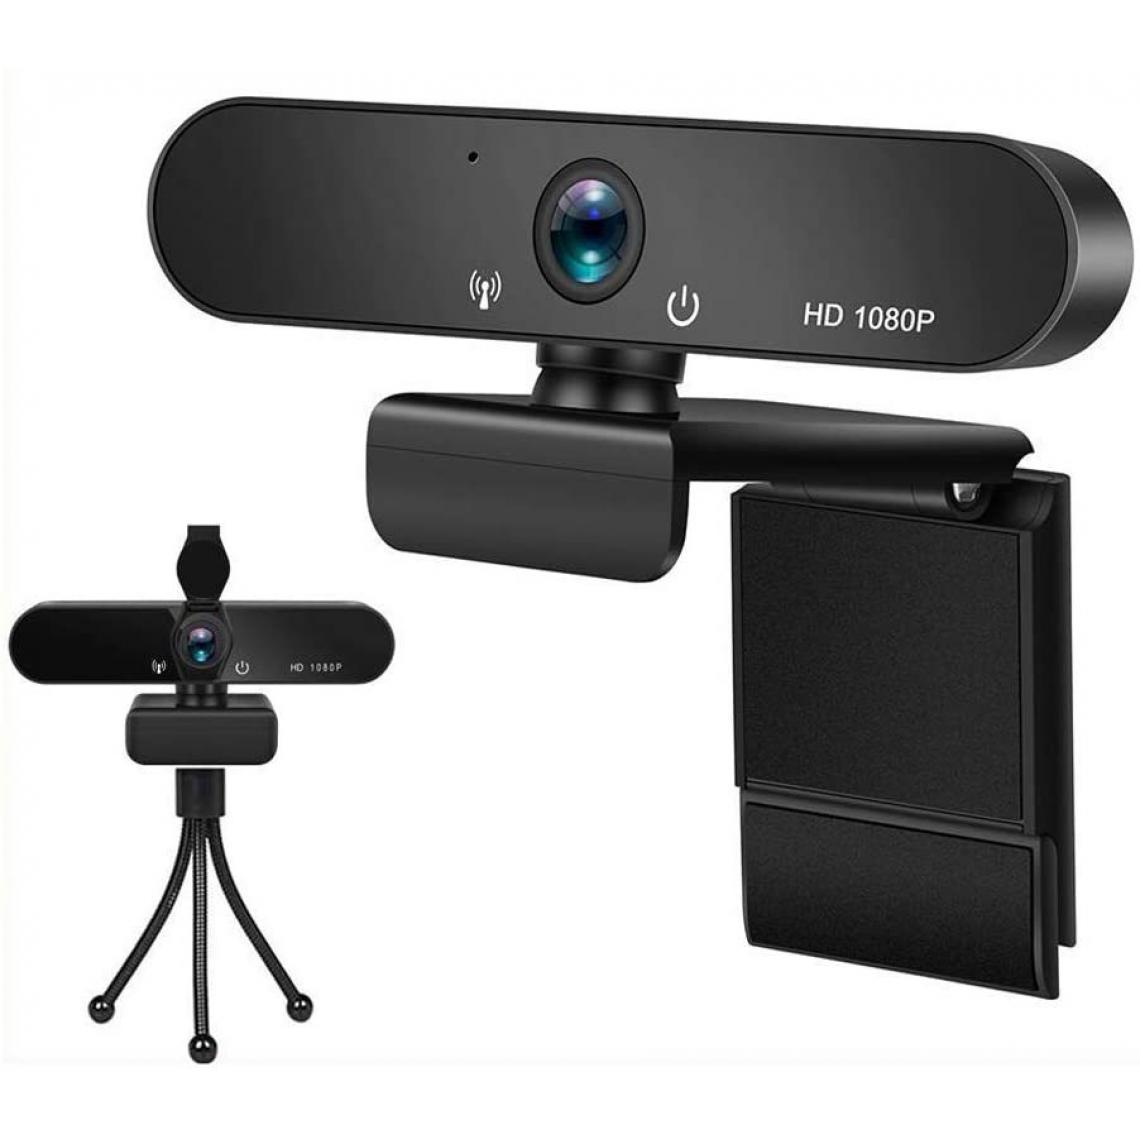 Chrono - Webcam 1080P avec Microphone, Caméra Web USB avec trépied, Webcam PC pour Ordinateur de Bureau et Portable, Web Camera pour Vidéo, Etudes, Vidéoconférence, Enregistrement, Jeux, Cours en Ligne(Noir) - Autres accessoires smartphone